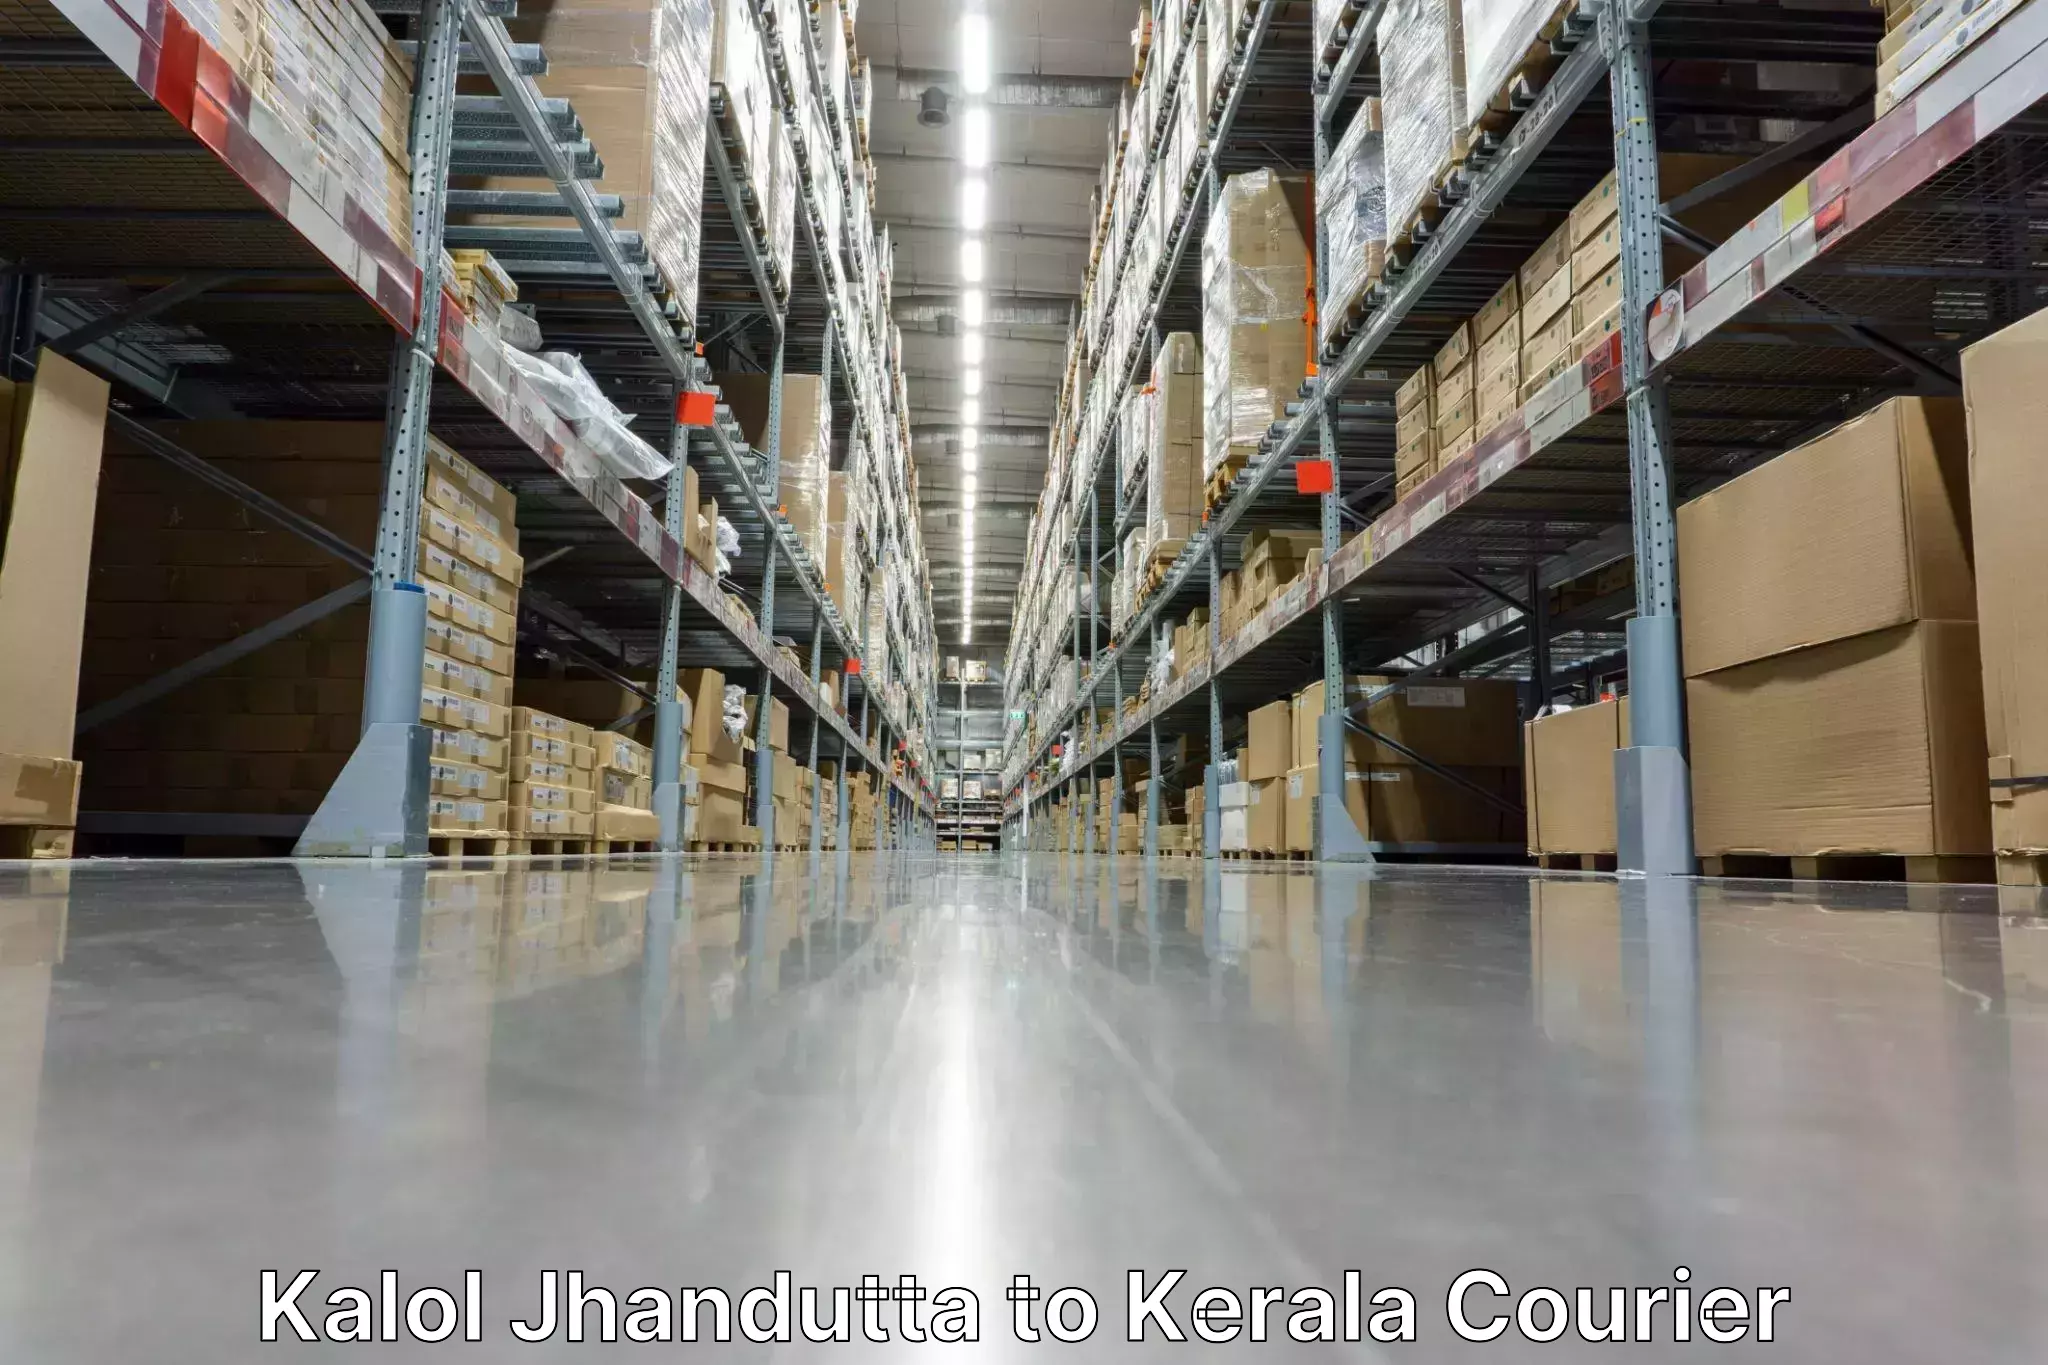 Global courier networks in Kalol Jhandutta to Kerala